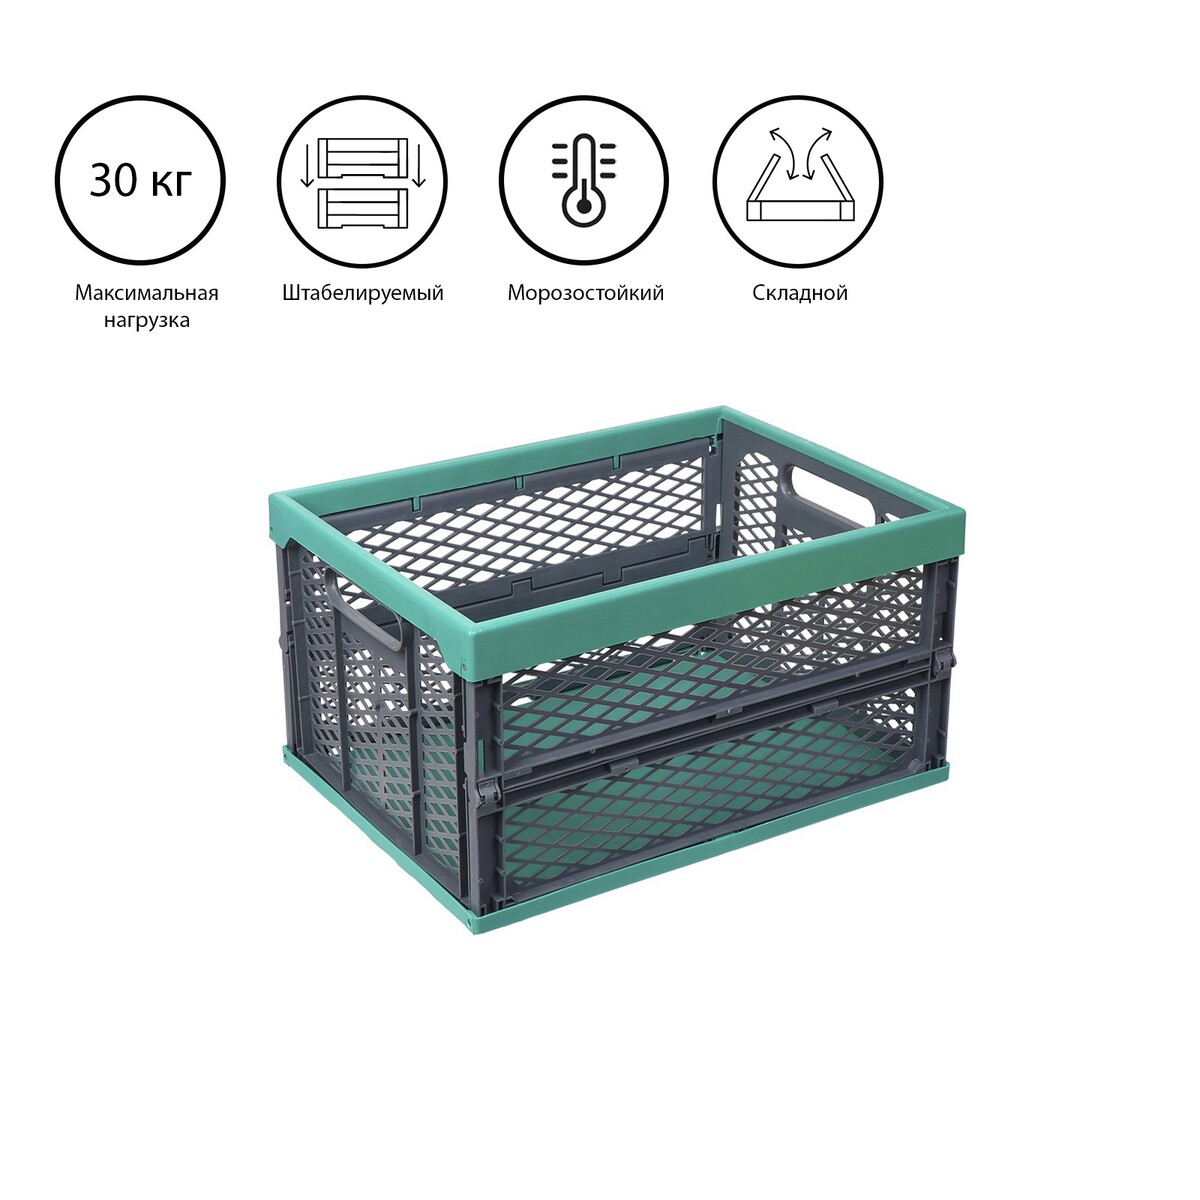 Ящик складной, пластиковый, 47,5 × 34,5 × 23 см, на 30 кг, зелено-серый мультиинструмент складной leatherman free к2 8 функций серый